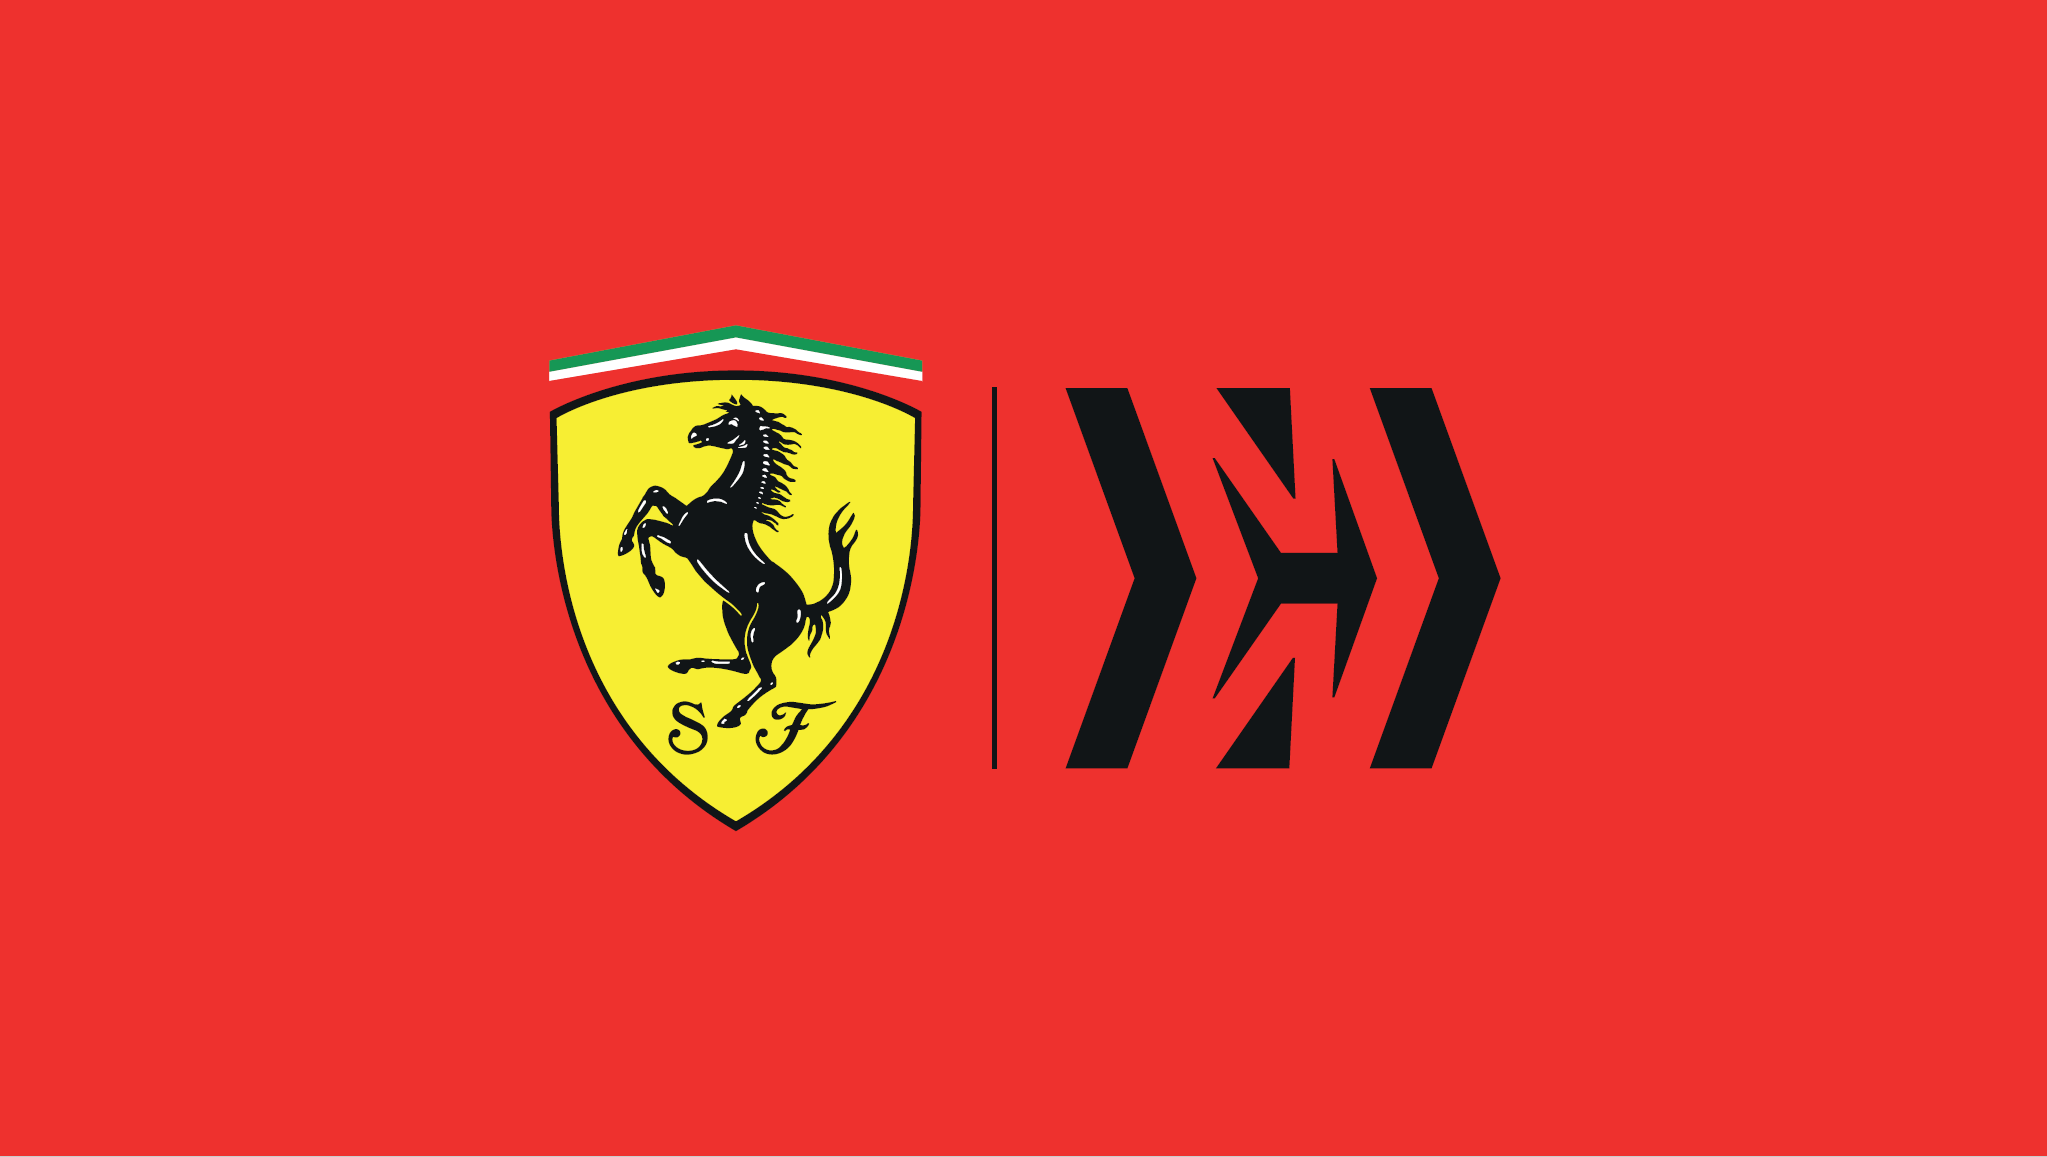 Ferrari mission winnow sponsor